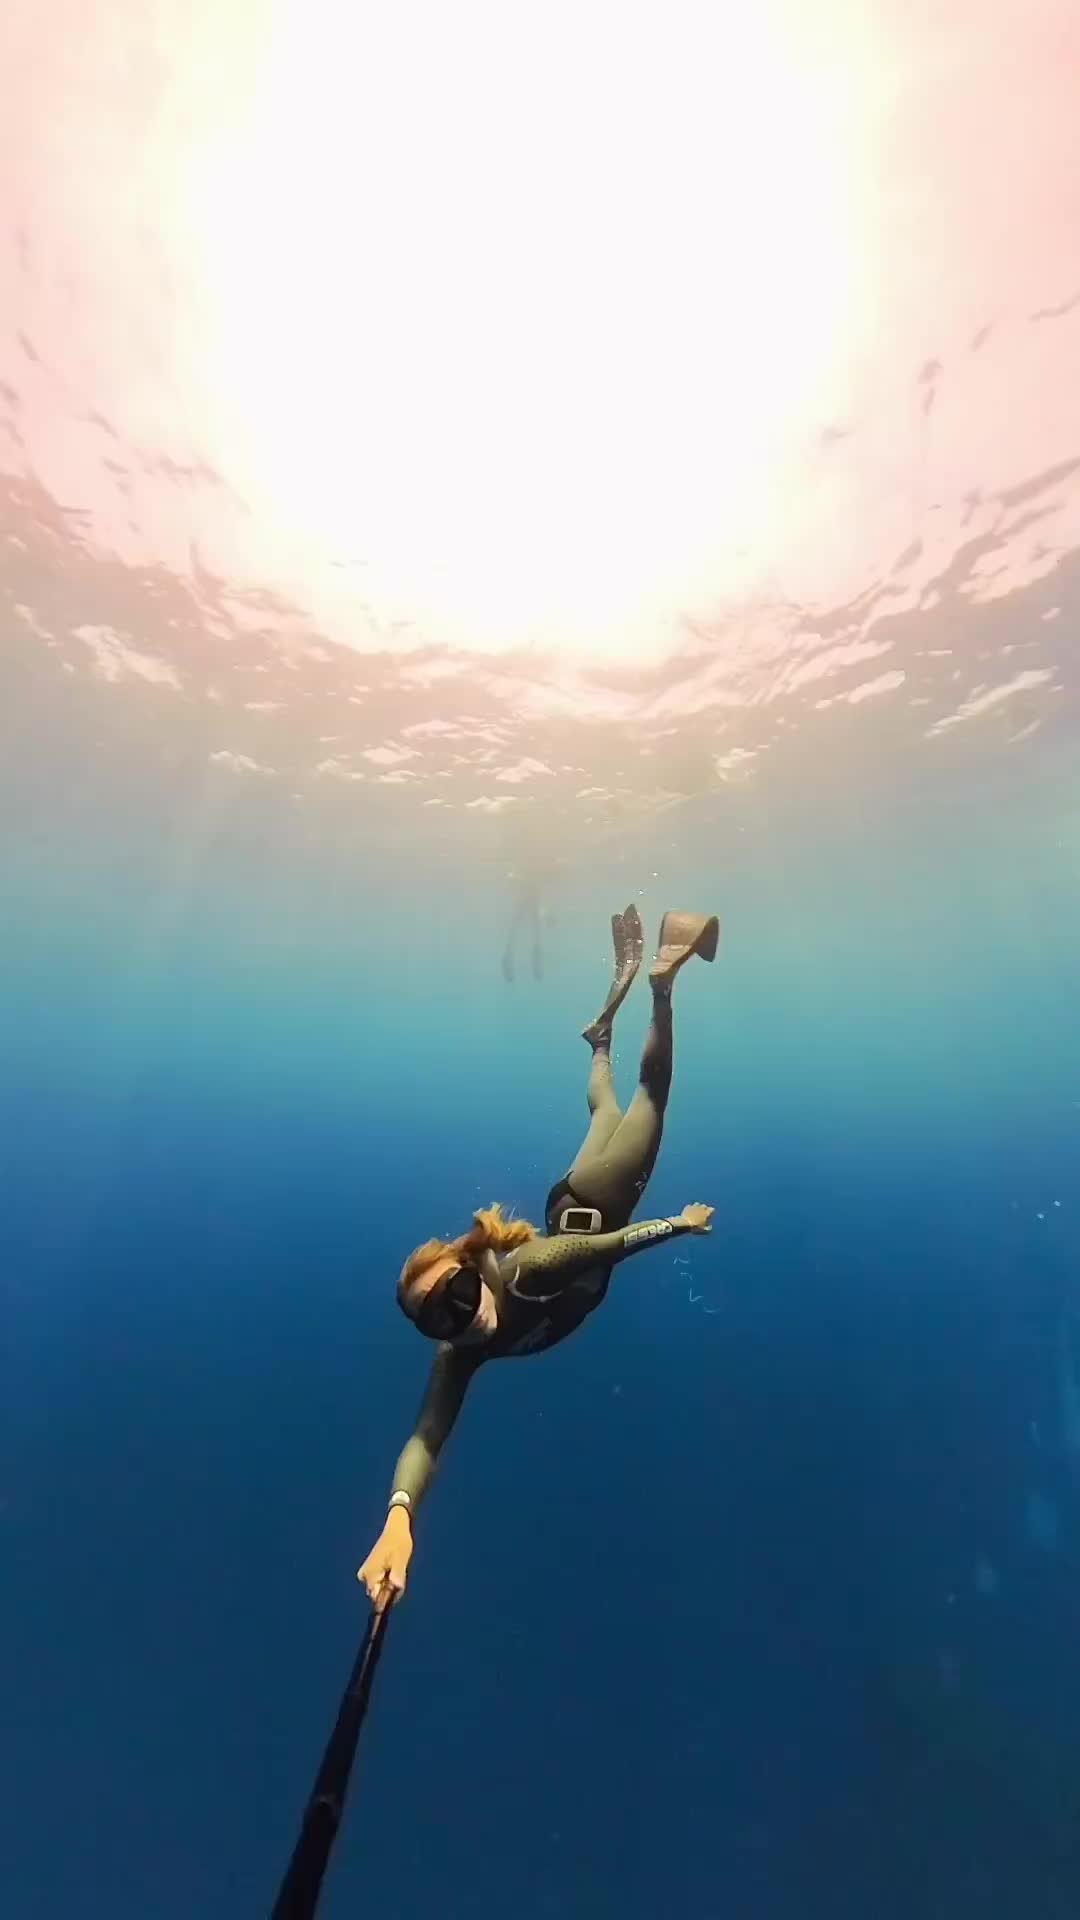 Inspiring Freediving Adventure in Tenerife's Crystal Waters